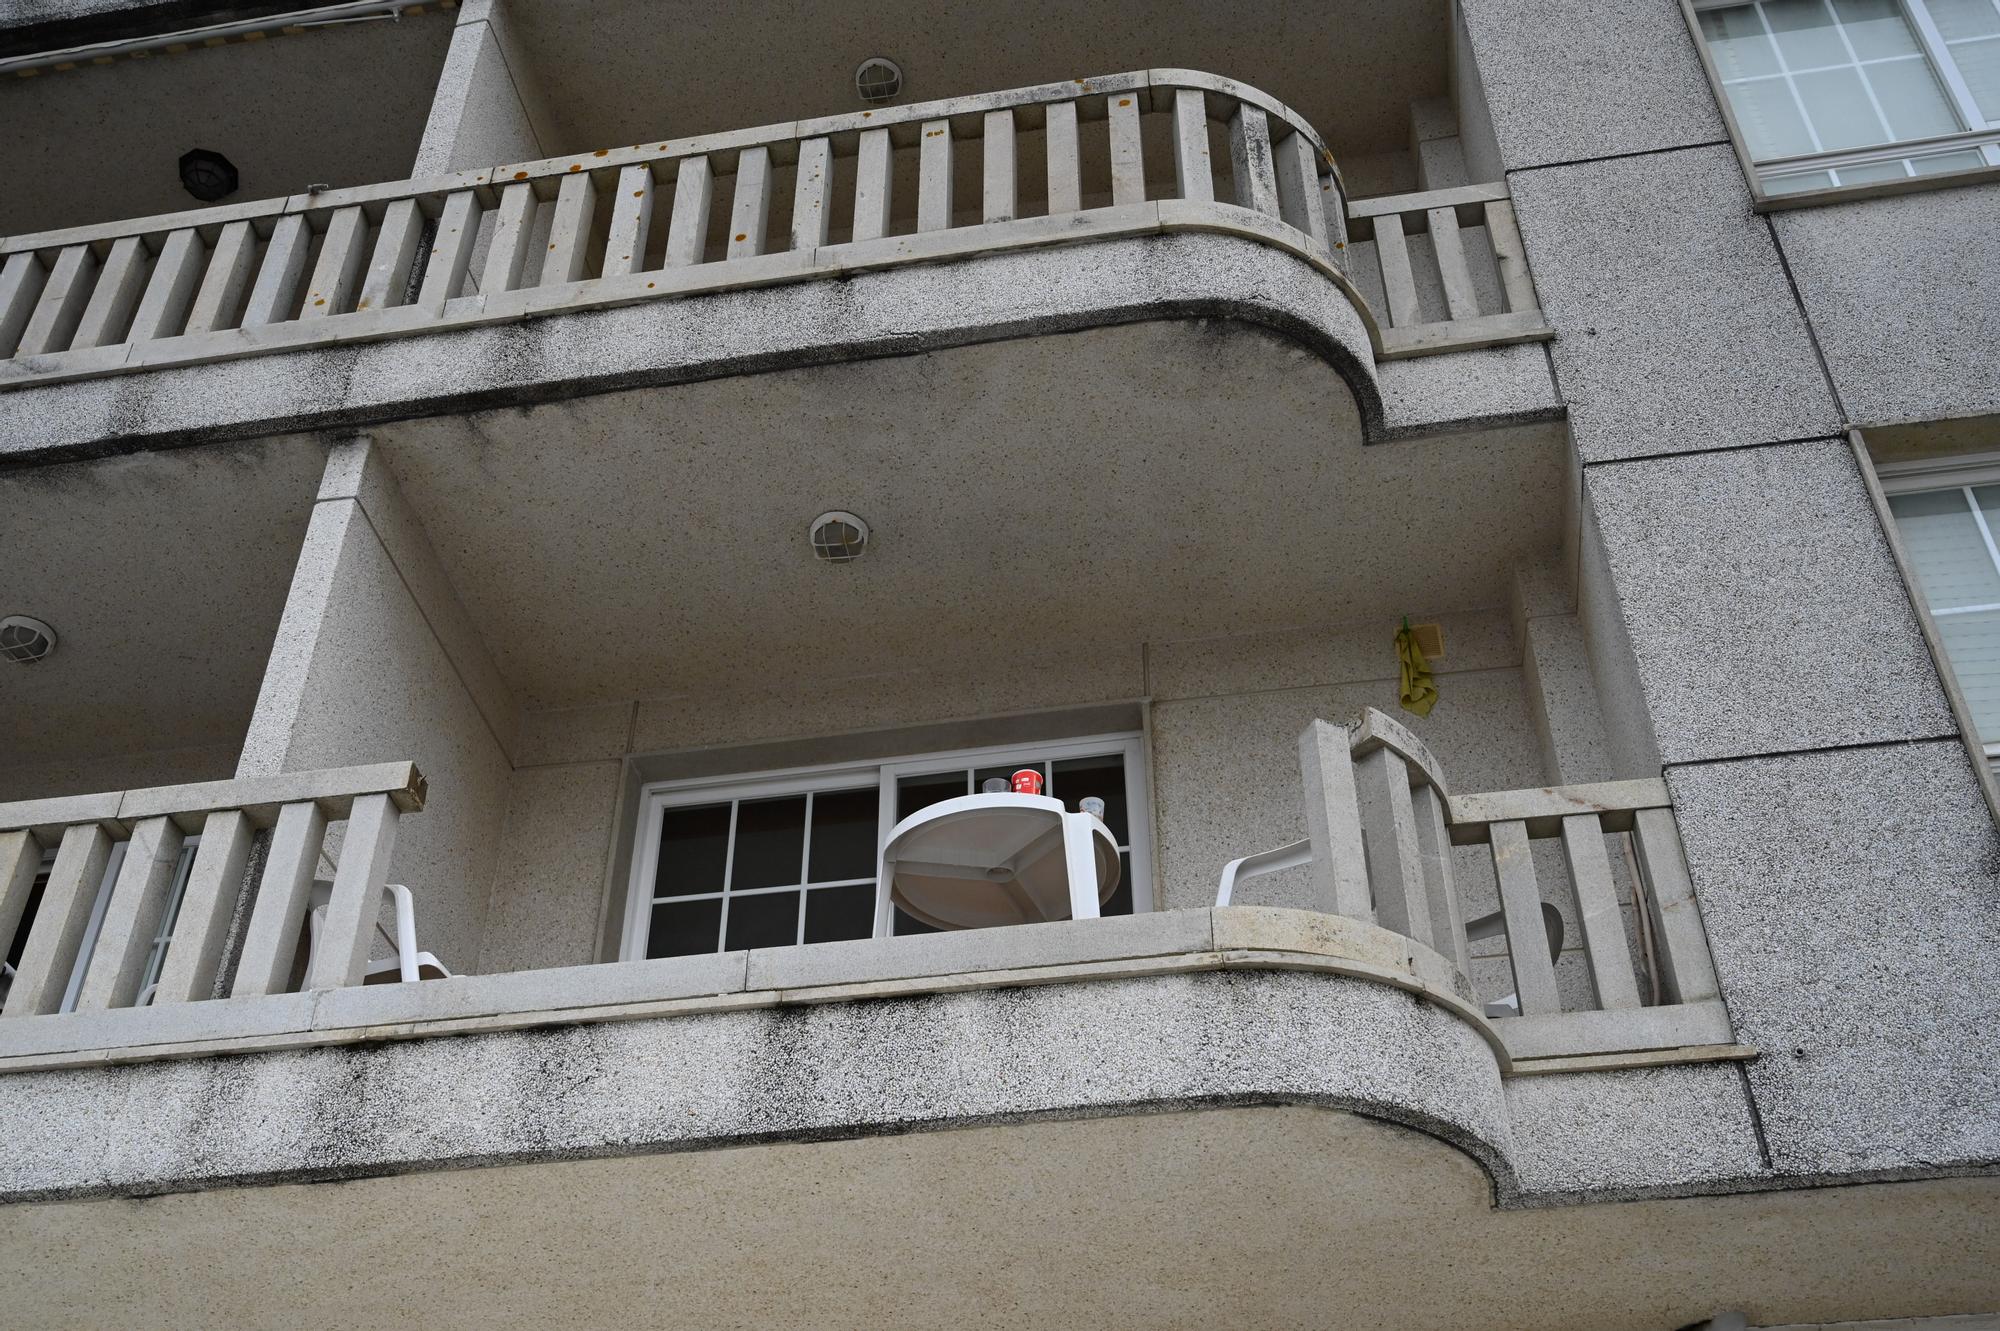 Cuatro jóvenes heridos al desprenderse la balaustrada de un balcón en Sanxenxo